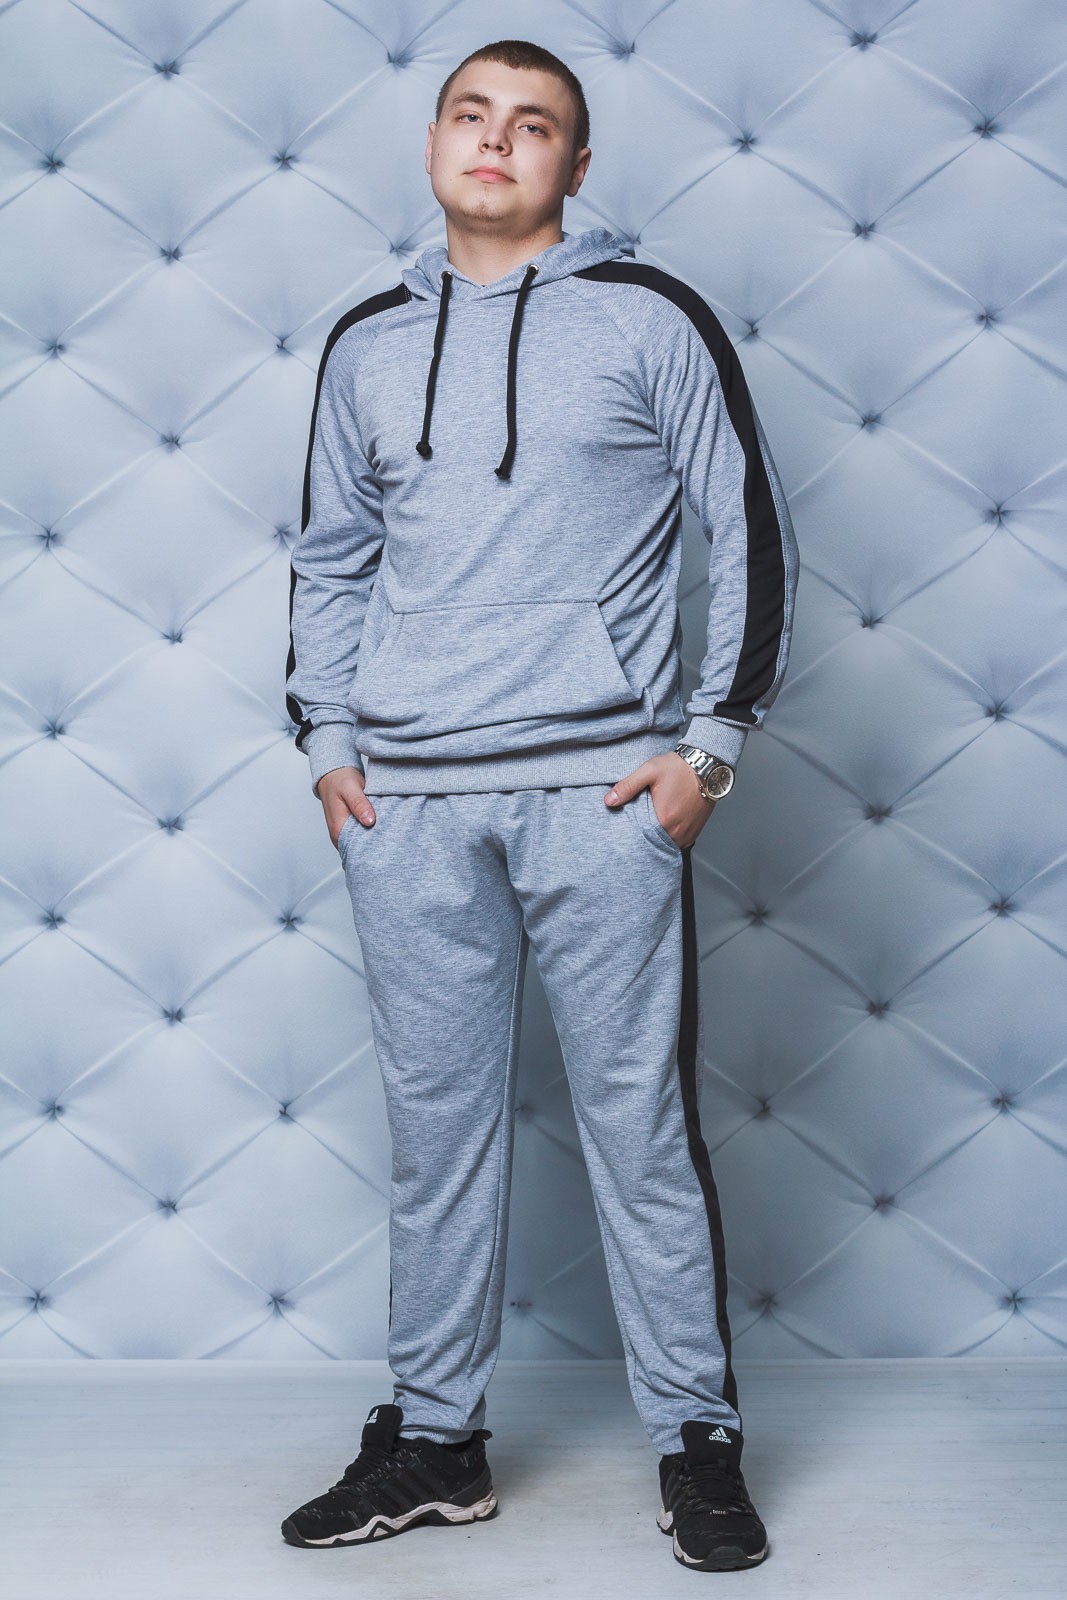 Спортивный костюм мужской с лампасами светло-серый 02155 купить